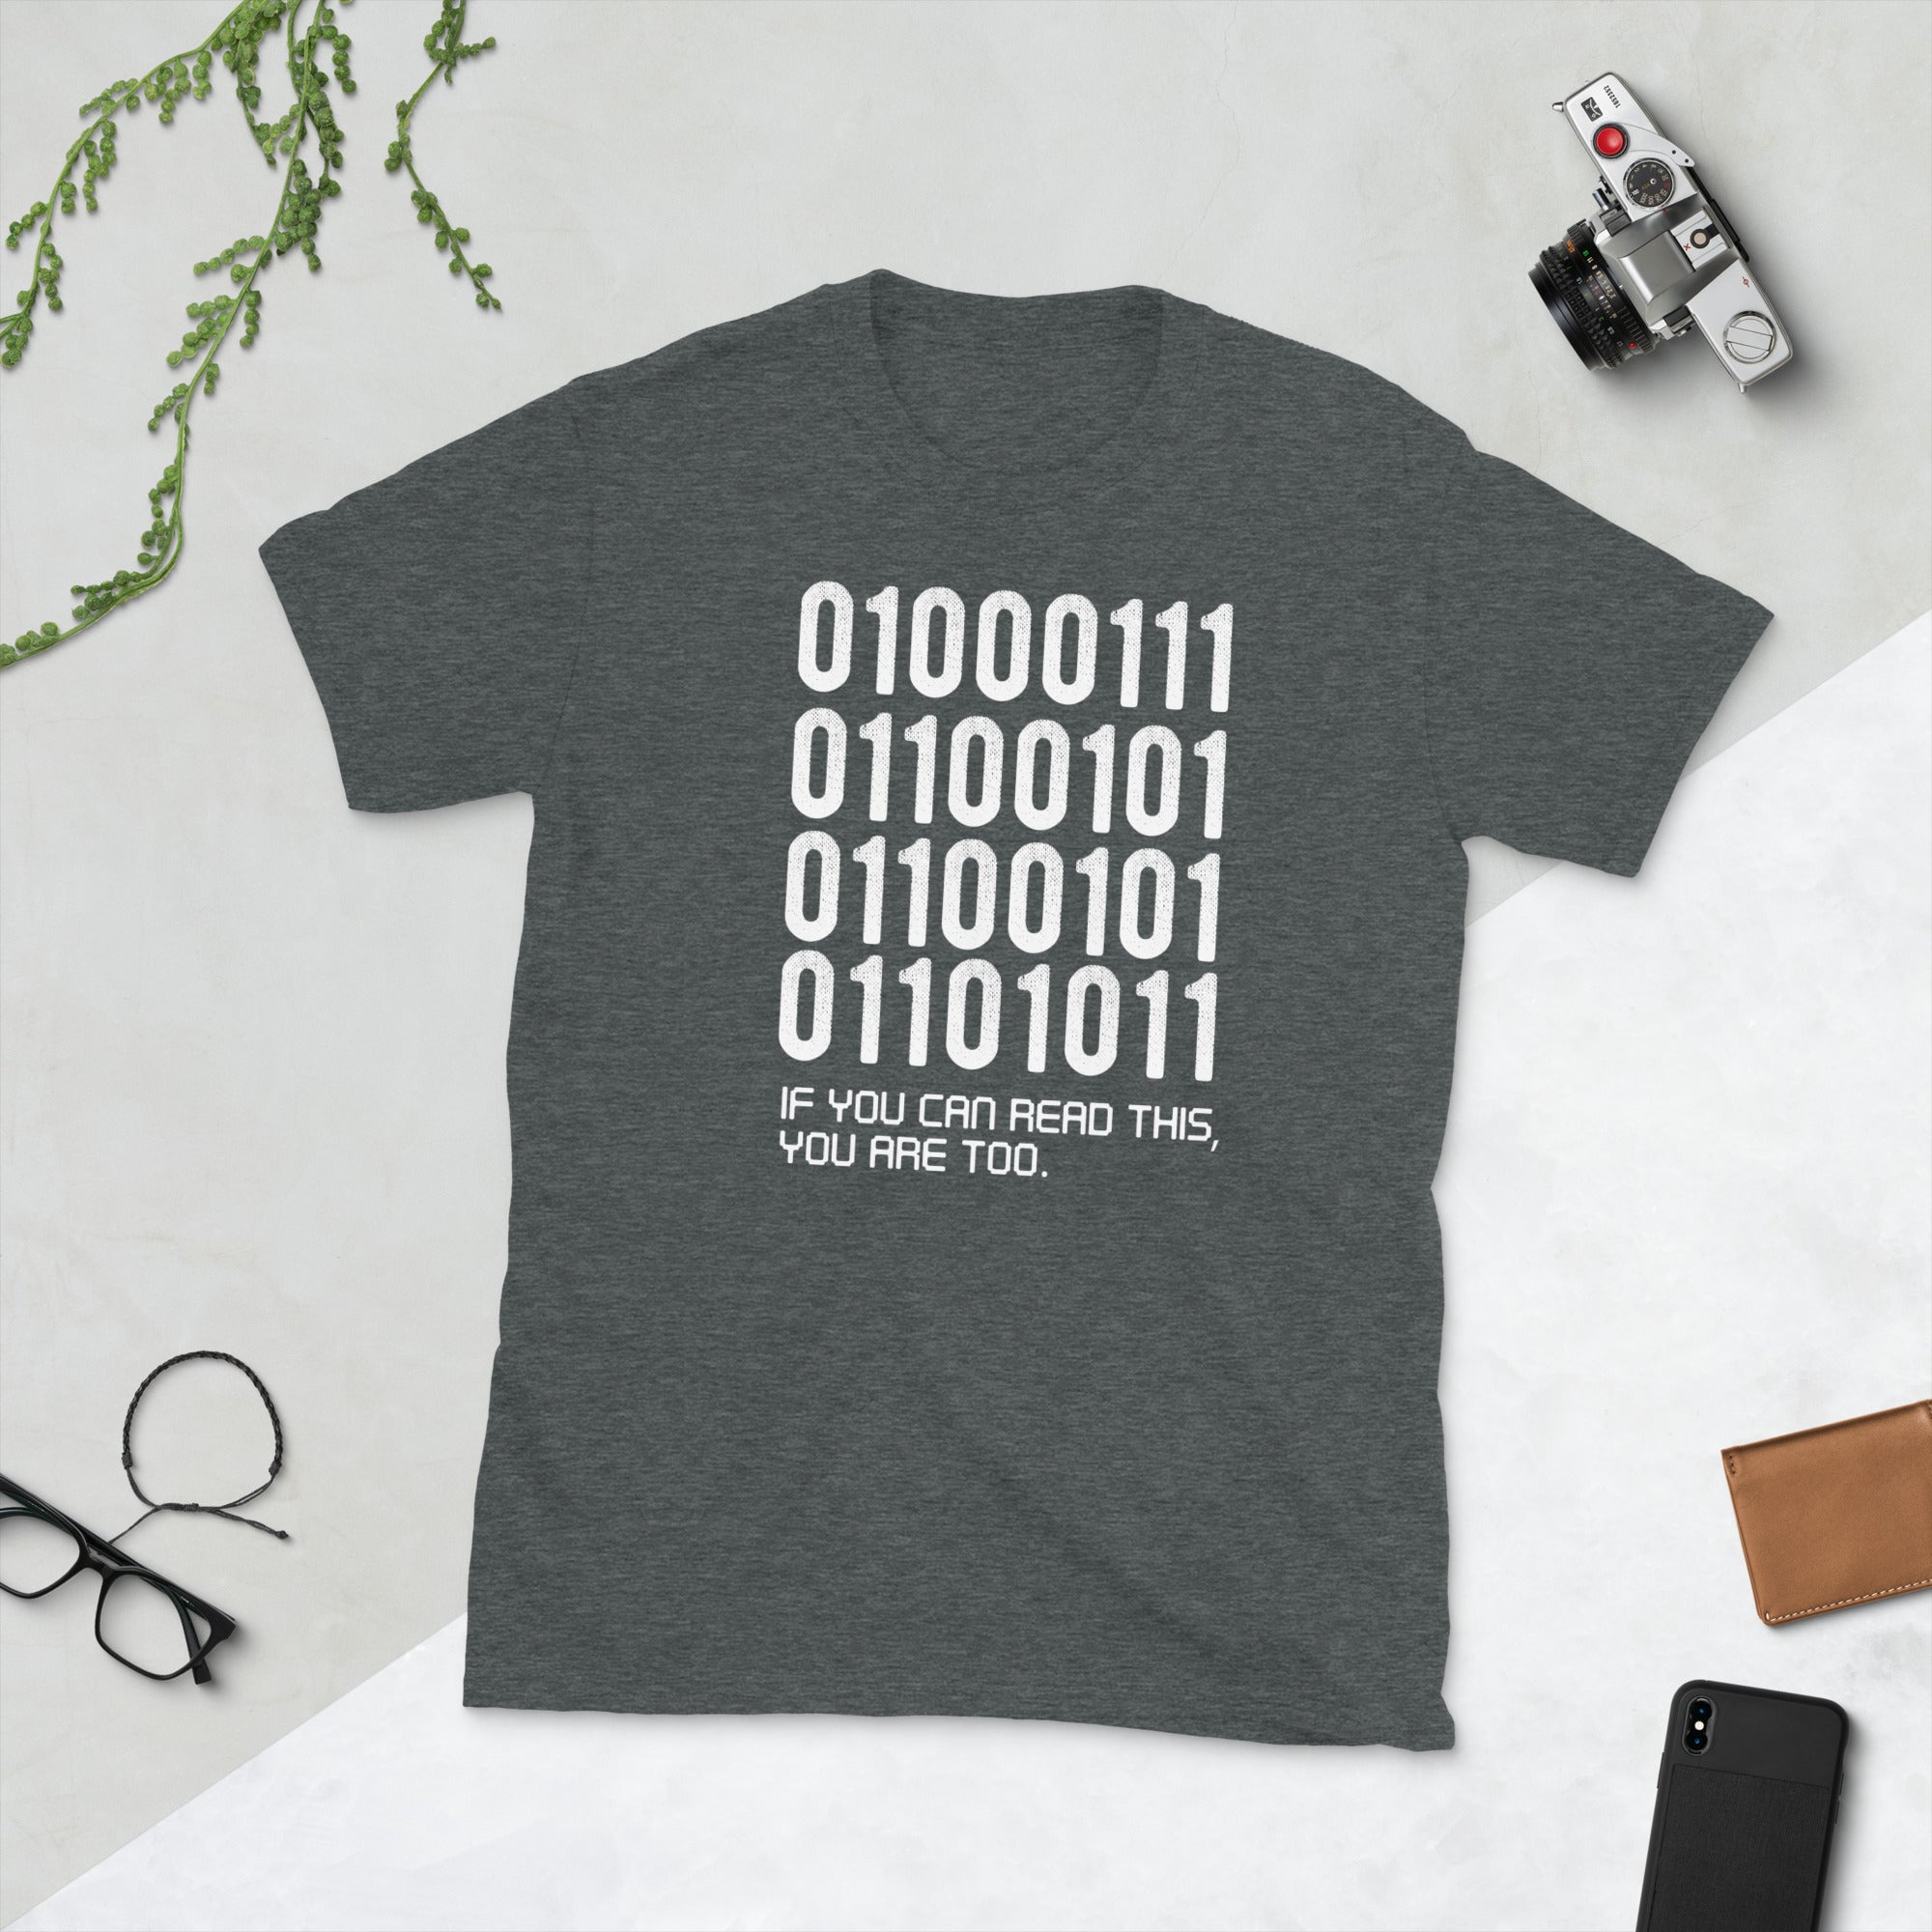 Software-Entwickler-Shirt, Software-Ingenieur, lustiges Geschenk, Computer-Programmierer-T-Shirt, Binärcode-Shirt, Web-Entwickler-Geschenk, Computer-Geek-Shirt